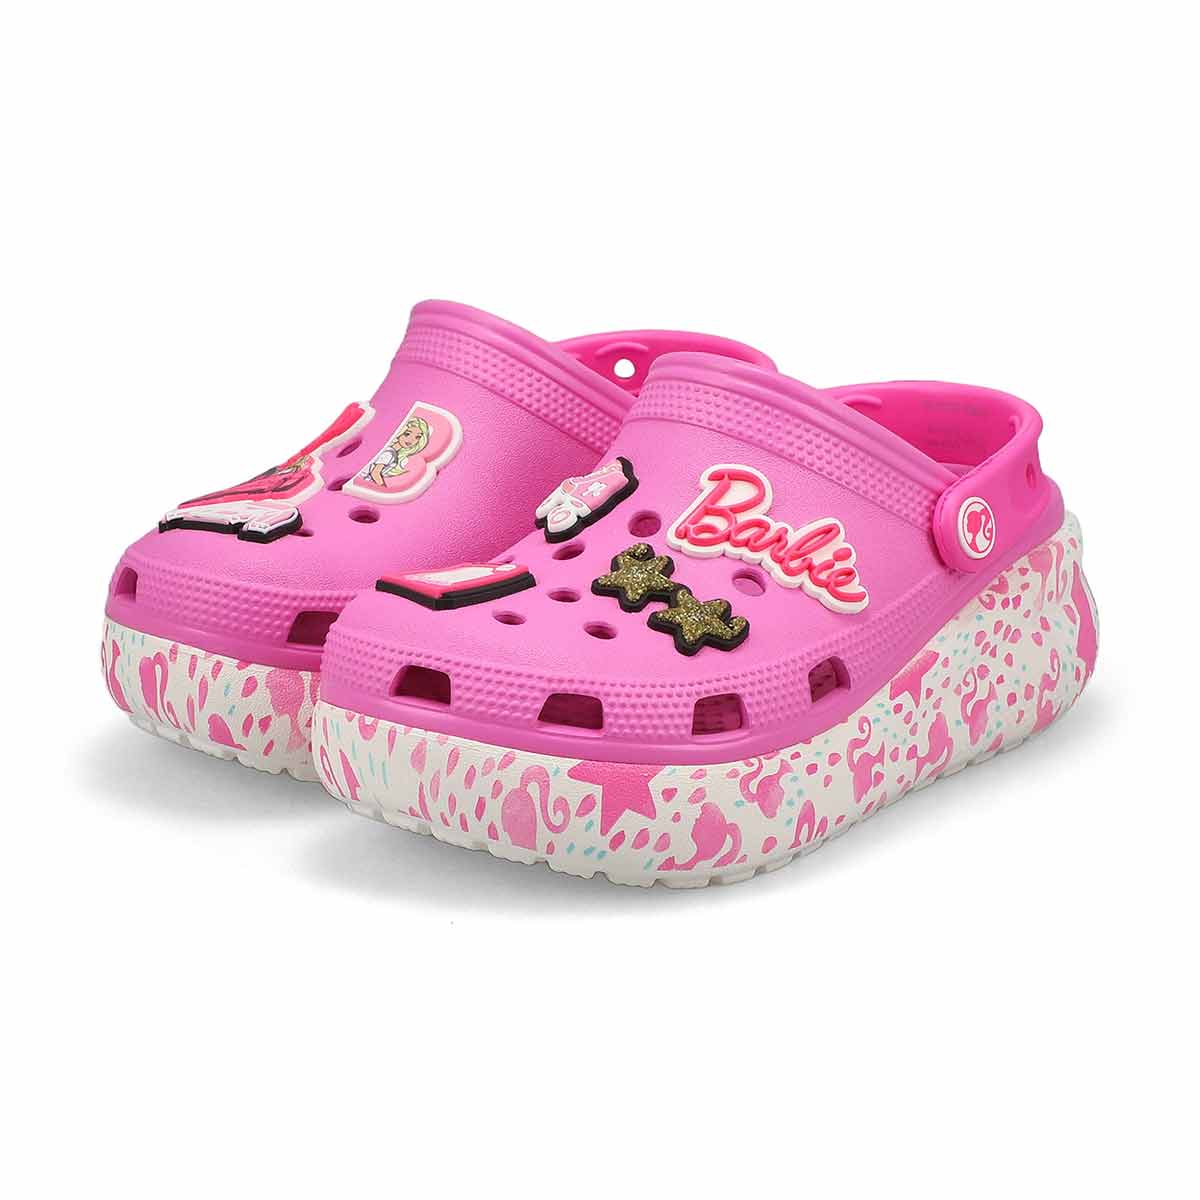 Crocs Kids' Barbie Cutie Crush Clog - Taffy | SoftMoc.com